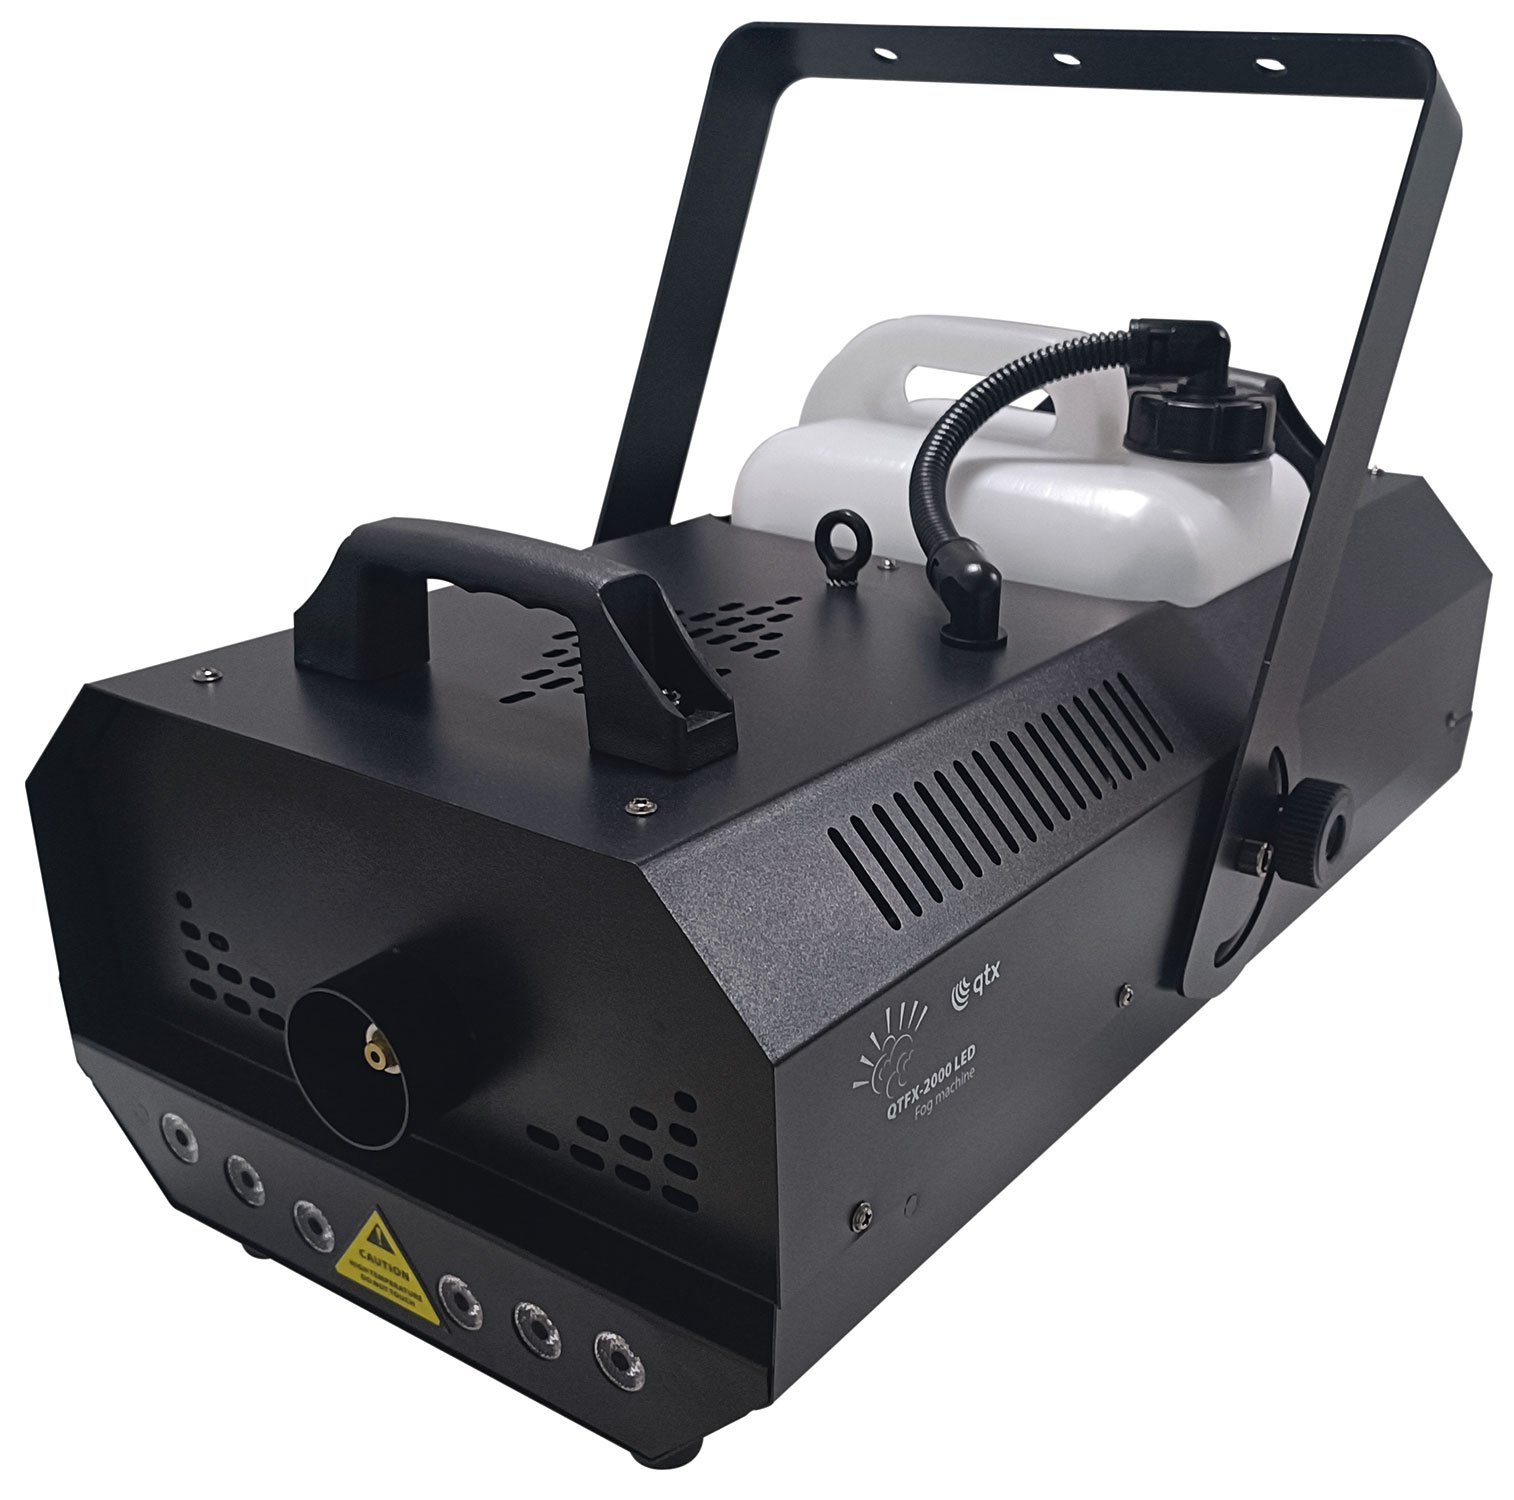 QTFX-2000 LED: High Power Smart LED Fog Machine 2000W High Power Smart LED Fog Machine 2000W